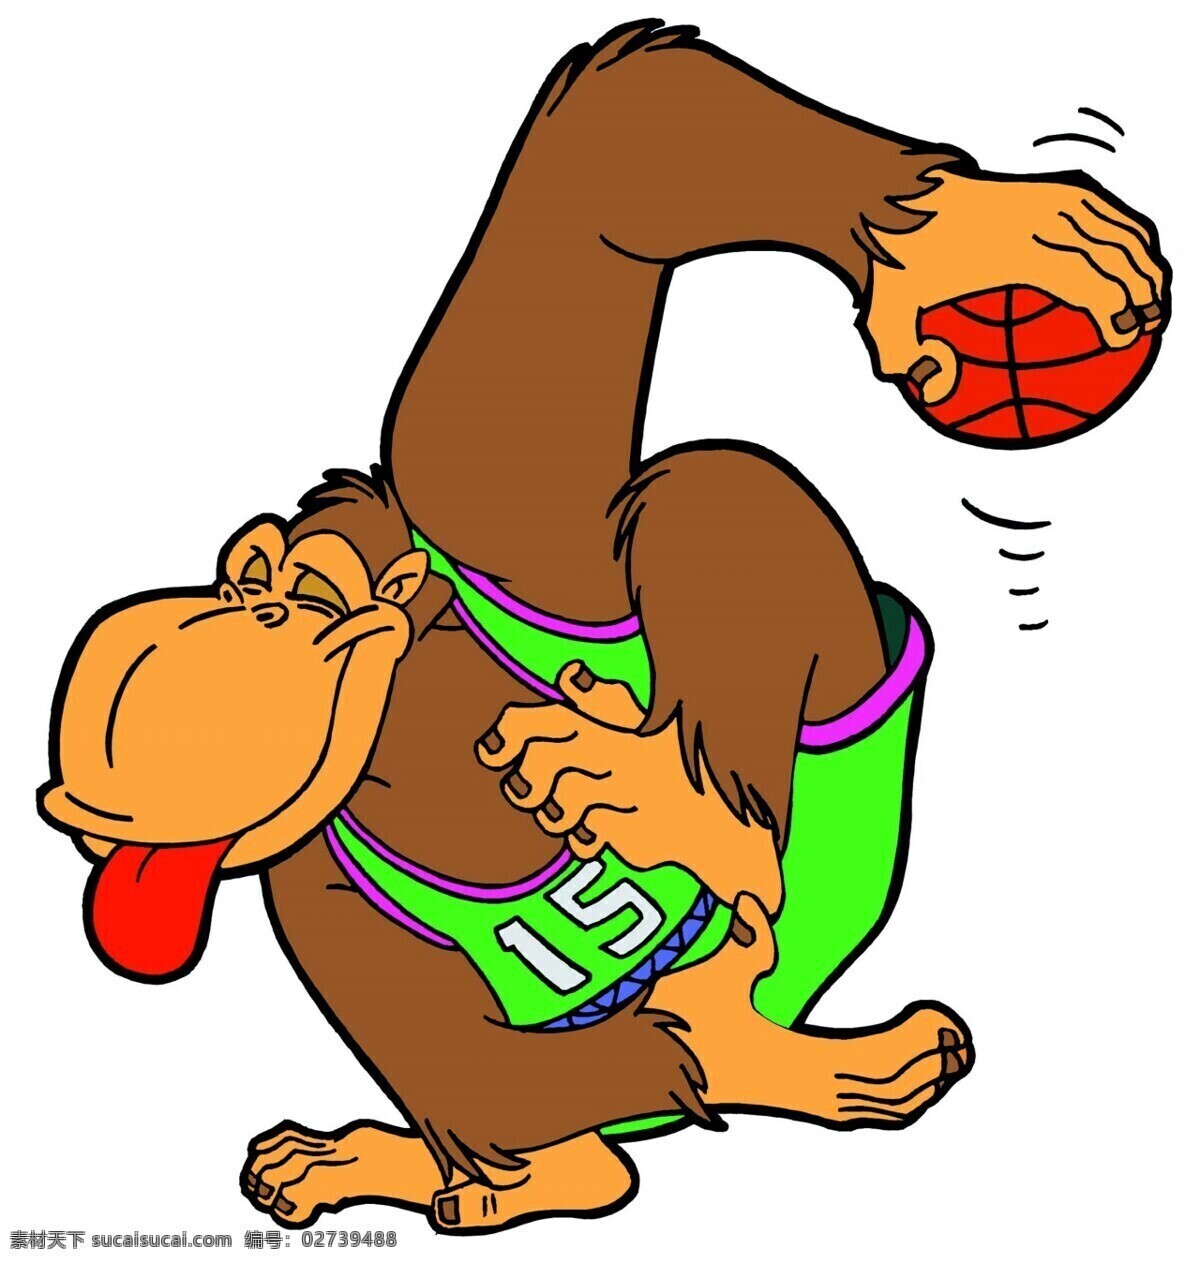 猩猩 篮球 儿童绘画素材 卡通小动物 卡通 图画 动物 造型 动漫 可爱